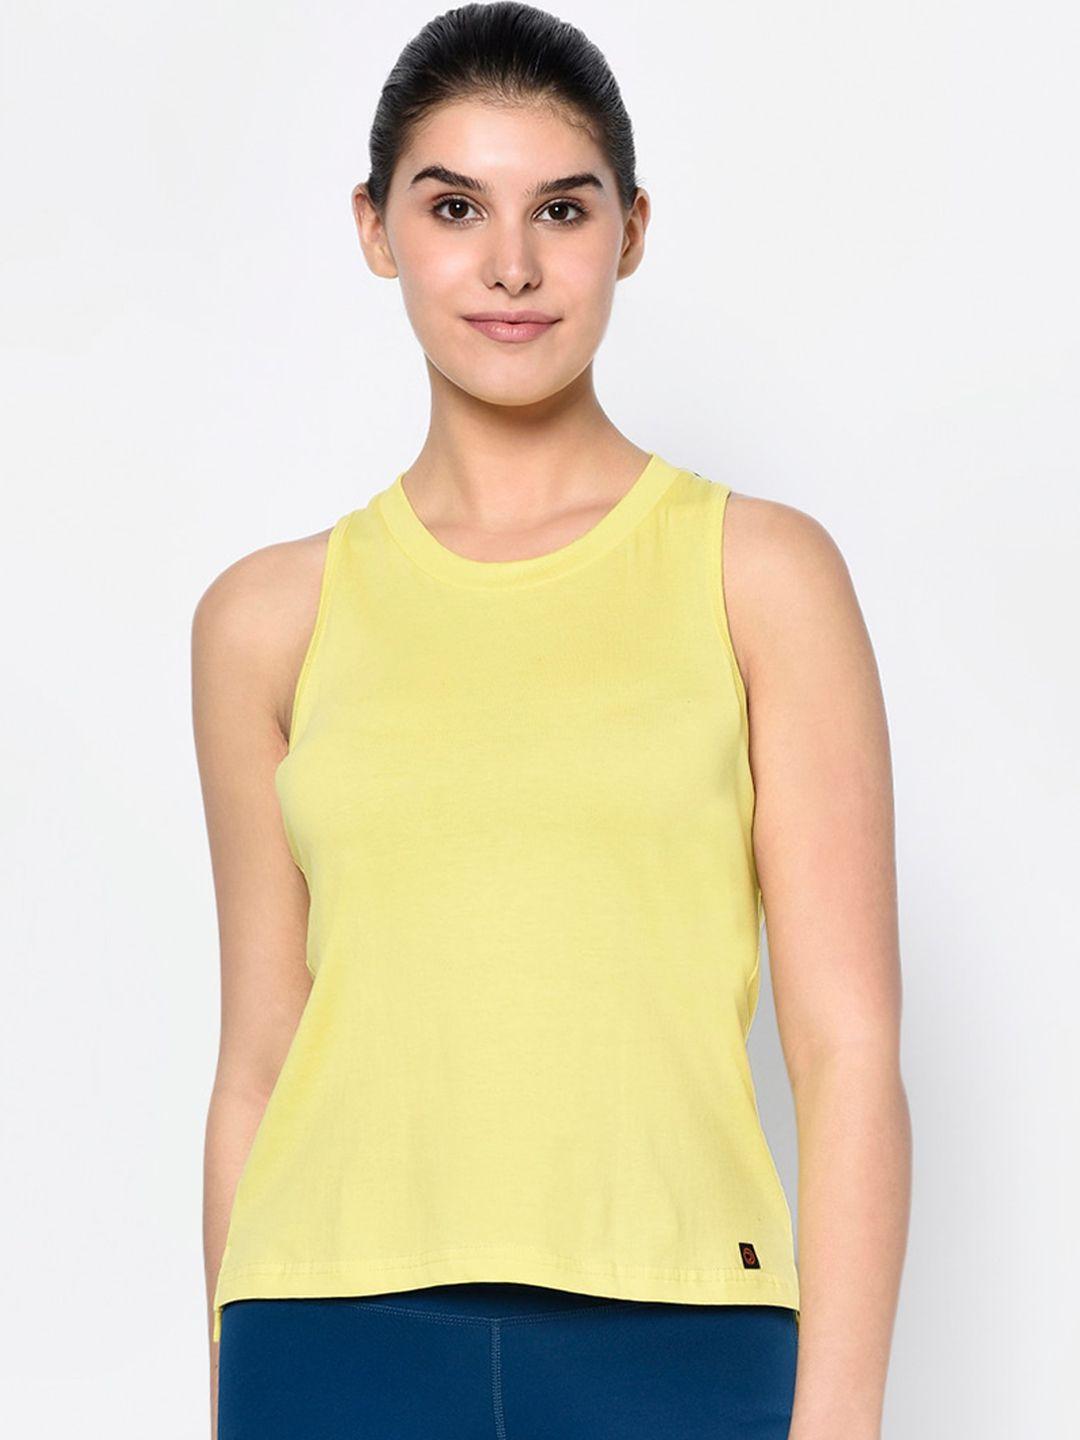 truerevo women yellow printed dry fit round neck t-shirt